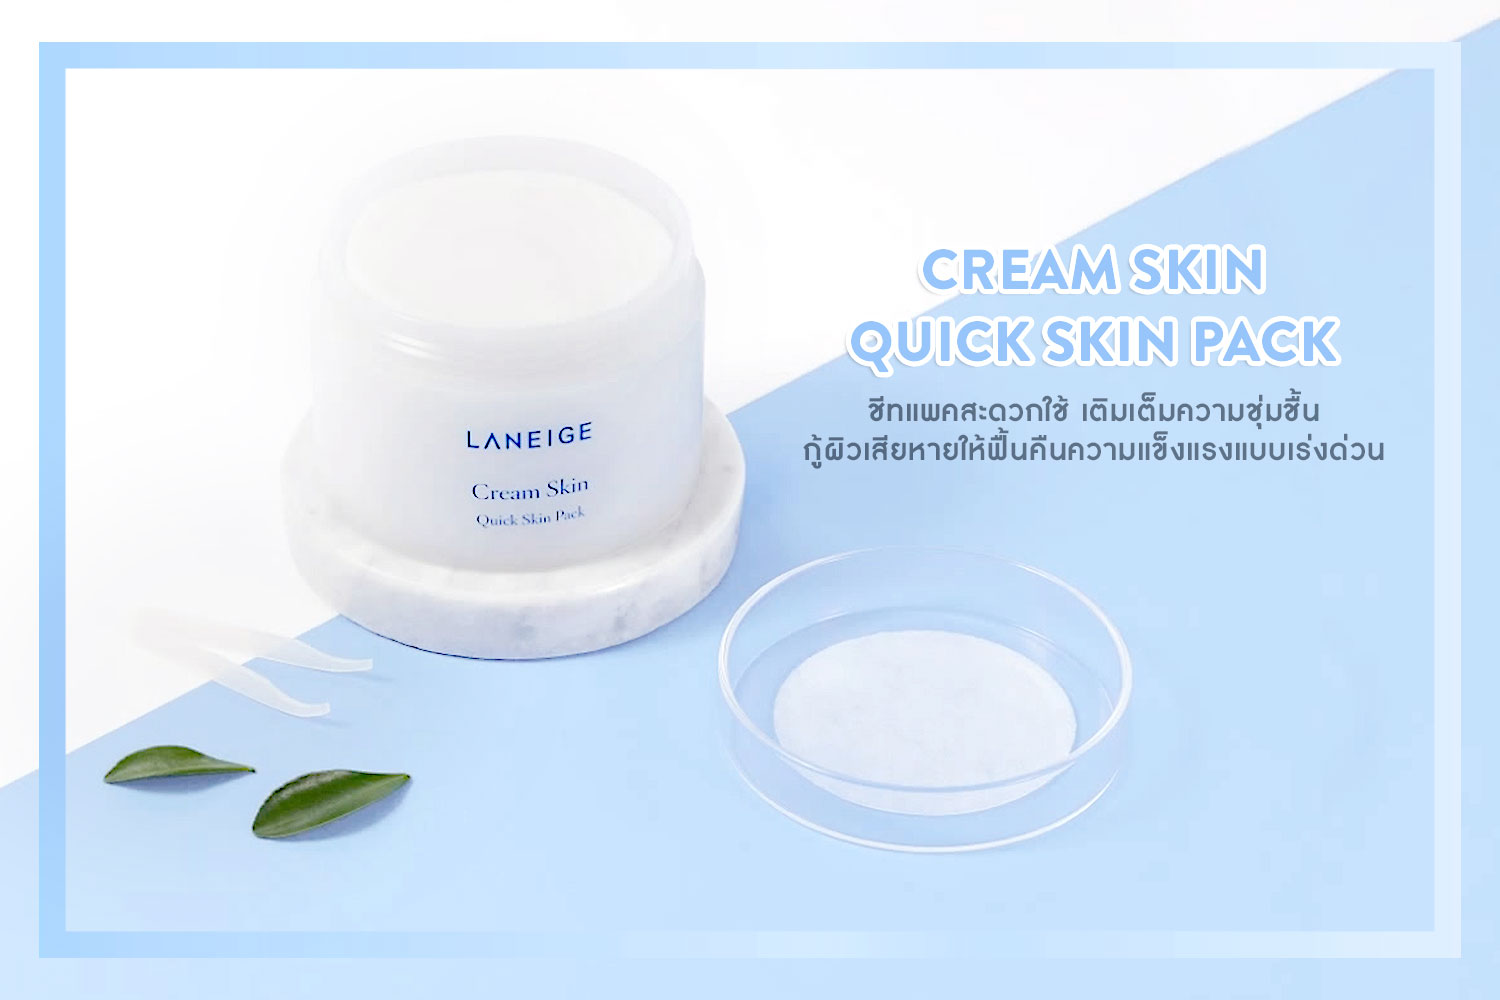 Laneige Cream Skin Quick Skin Pack 100 Pads 140 ml สกินแพ็คที่ให้การบำรุงผิวหน้าได้สะดวกยิ่งขึ้น กู้ผิวเสียแบบเร่งด่วน ชุ่มชื้น แข็งแรง สุขภาพดีทันใจ